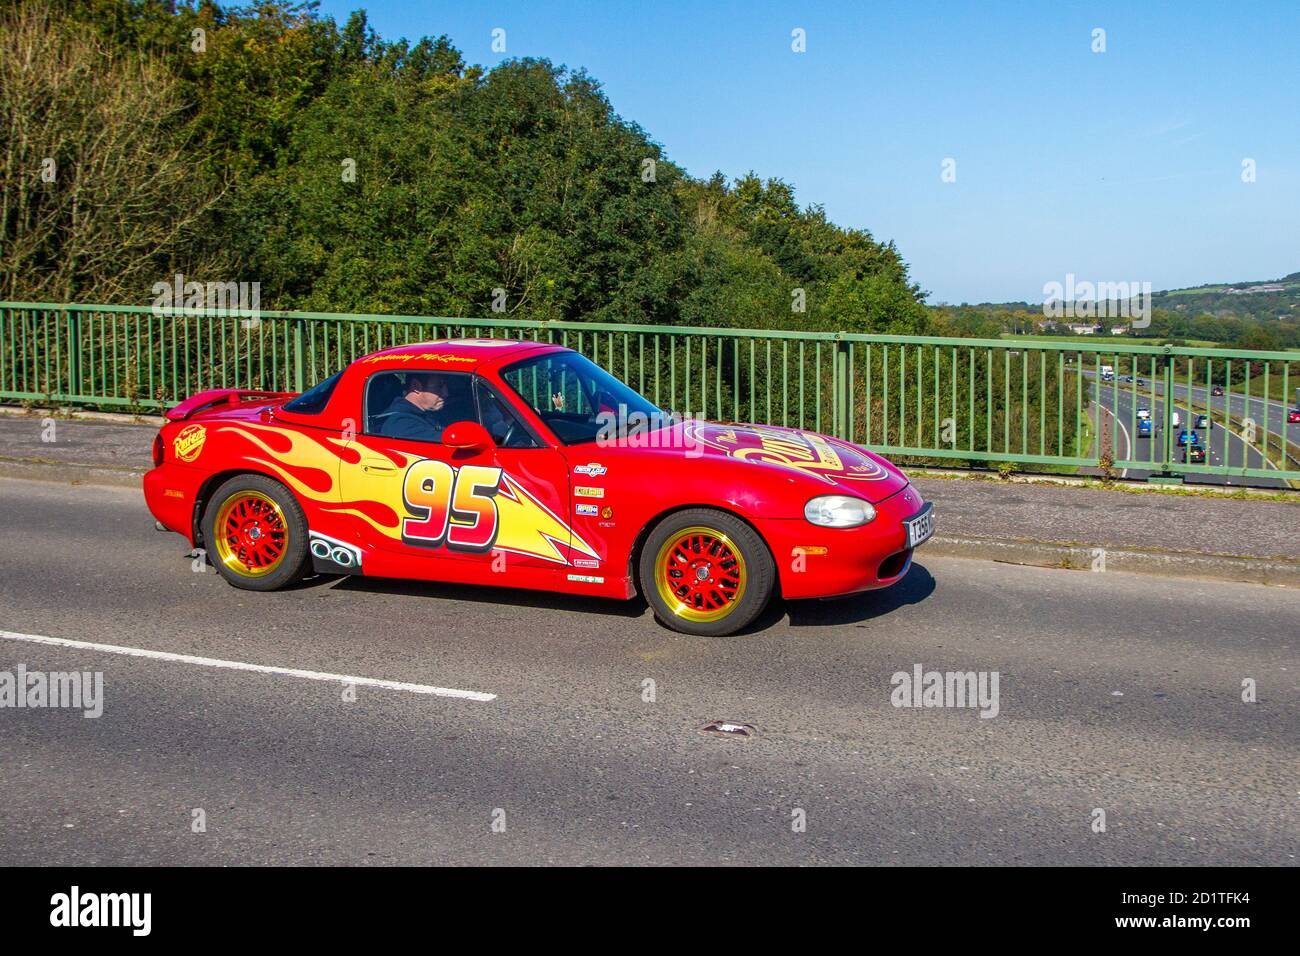 Roadster à essence rouge 1840cc 1999 90s années 90, autocollants de flamme rouge sur la voiture sportive Mazda MX-5 personnalisée en mouvement traversant le pont autoroutier près de Manchester, Royaume-Uni Banque D'Images